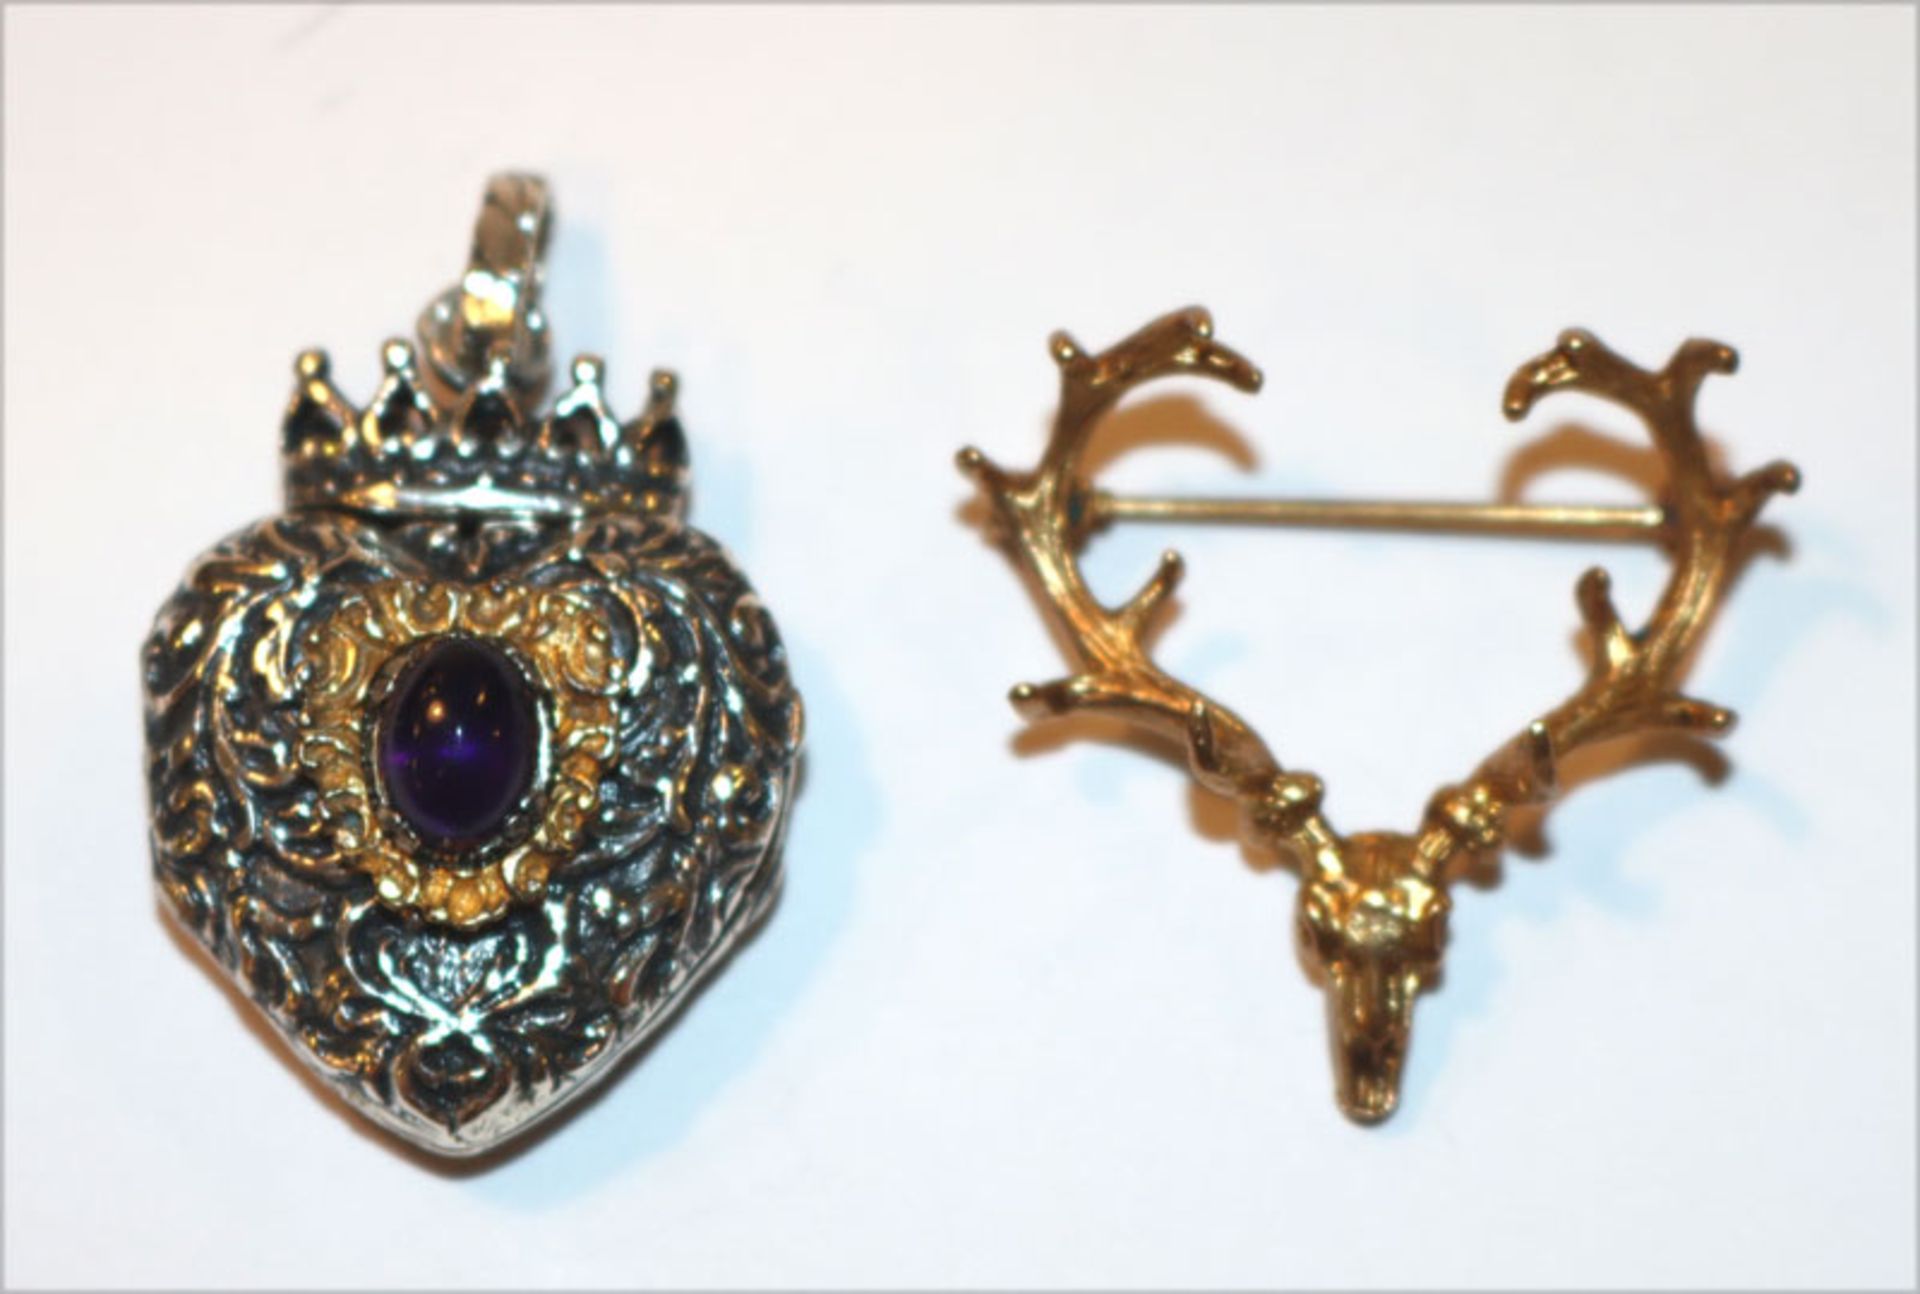 Silber Medaillon-Anhänger in Herzform mit Krone, aufklappbar, Reliefdekor mit Amethyst, H 4 cm,